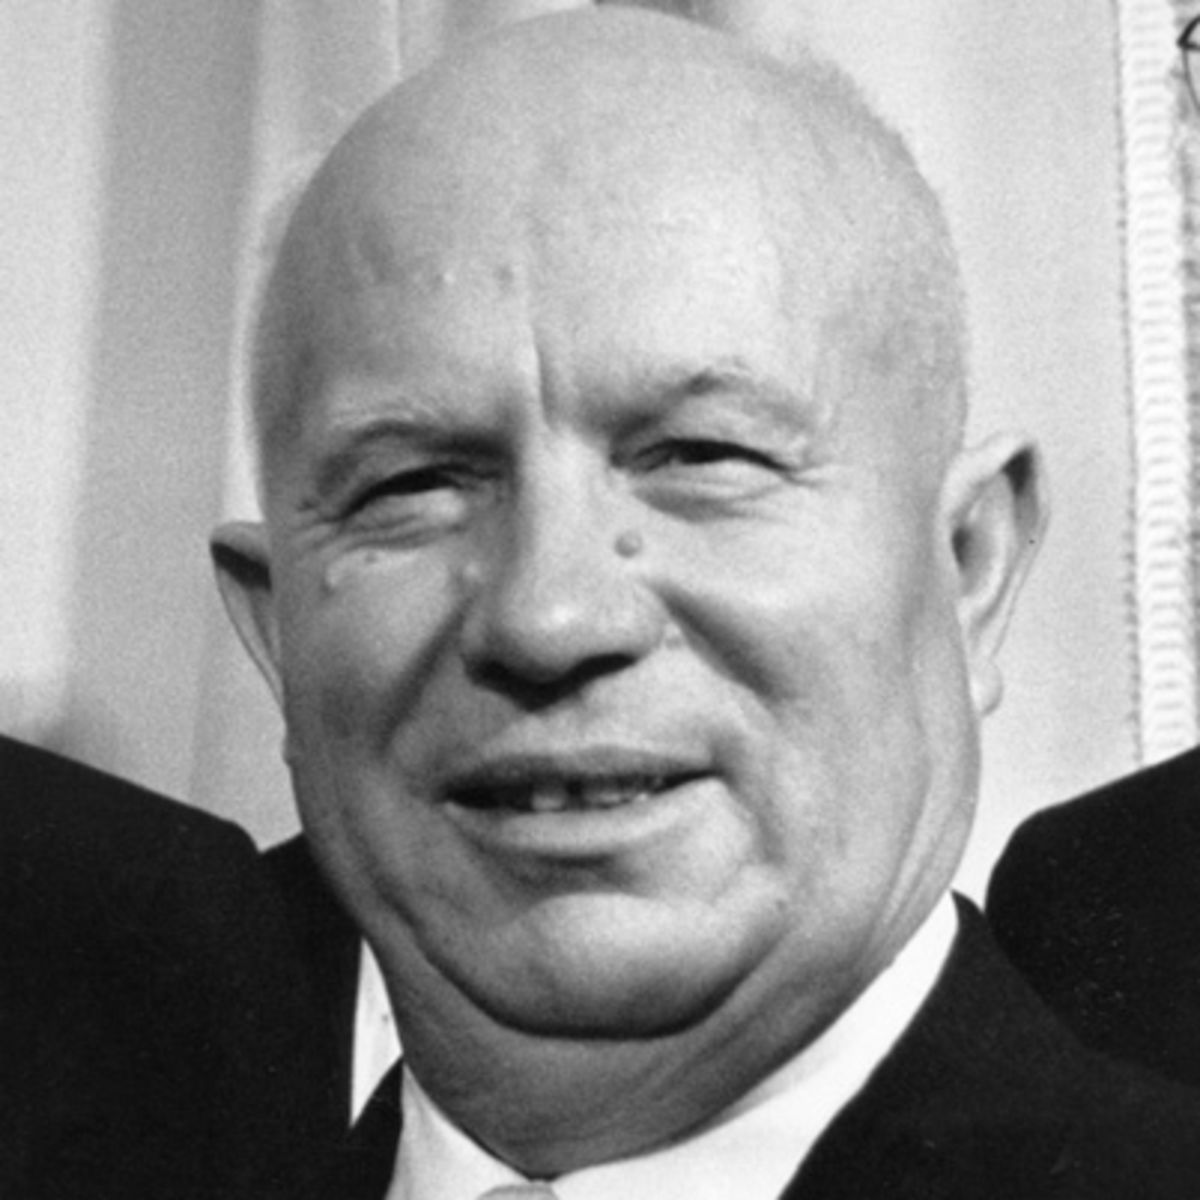 Nikita Khrushchev's "Secret Speech" turned the Communist world on its head.